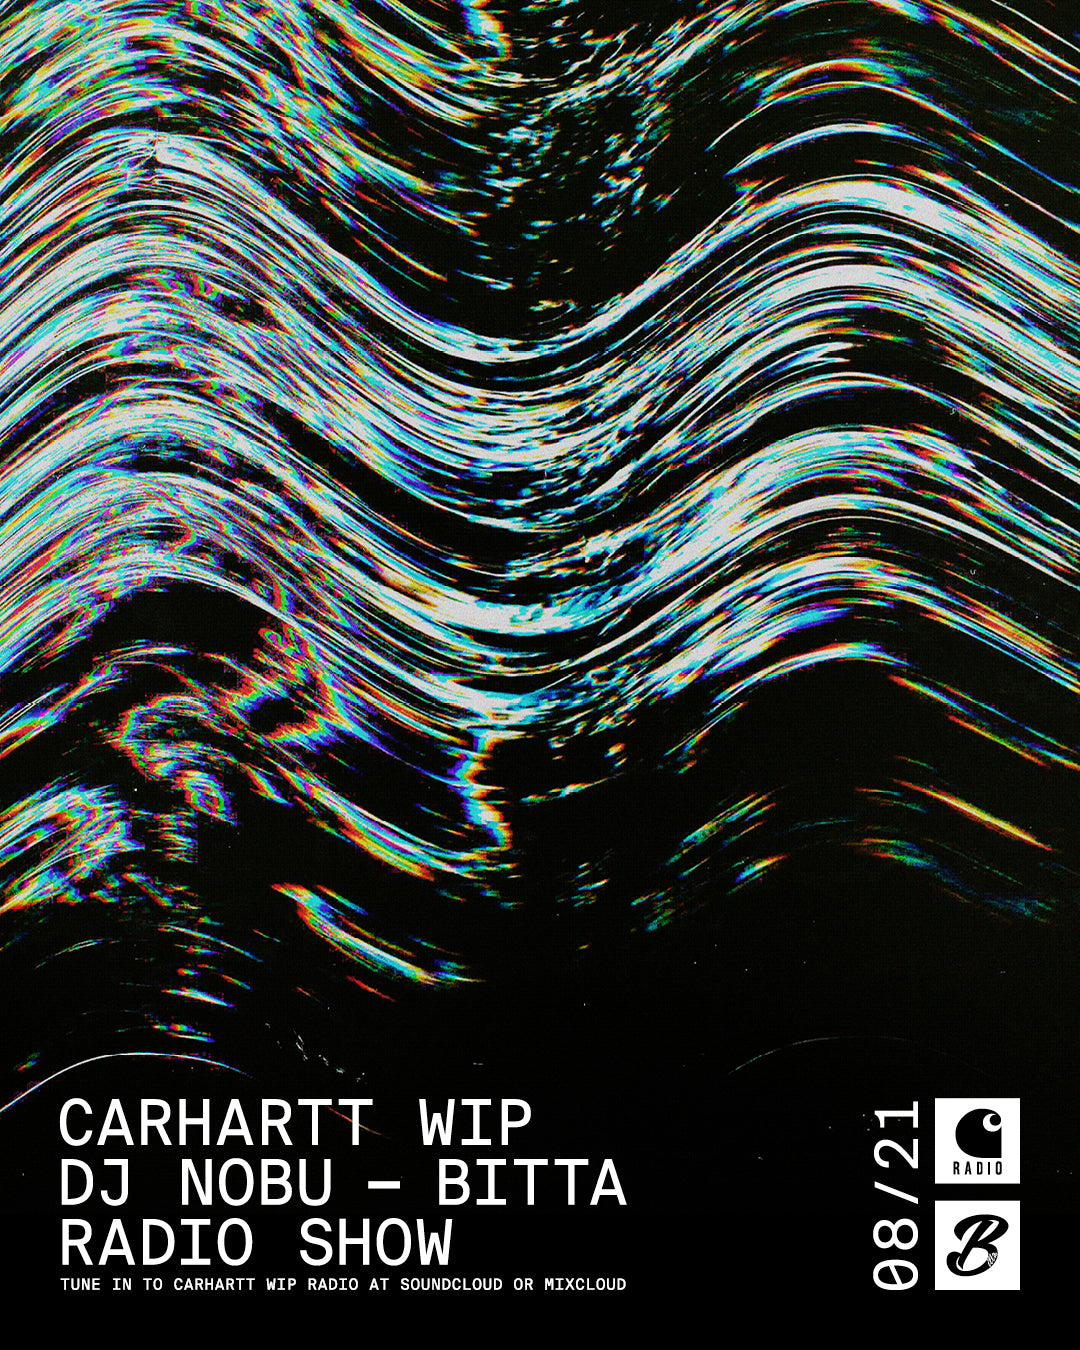 Carhartt WIP Radio / DJ Nobu